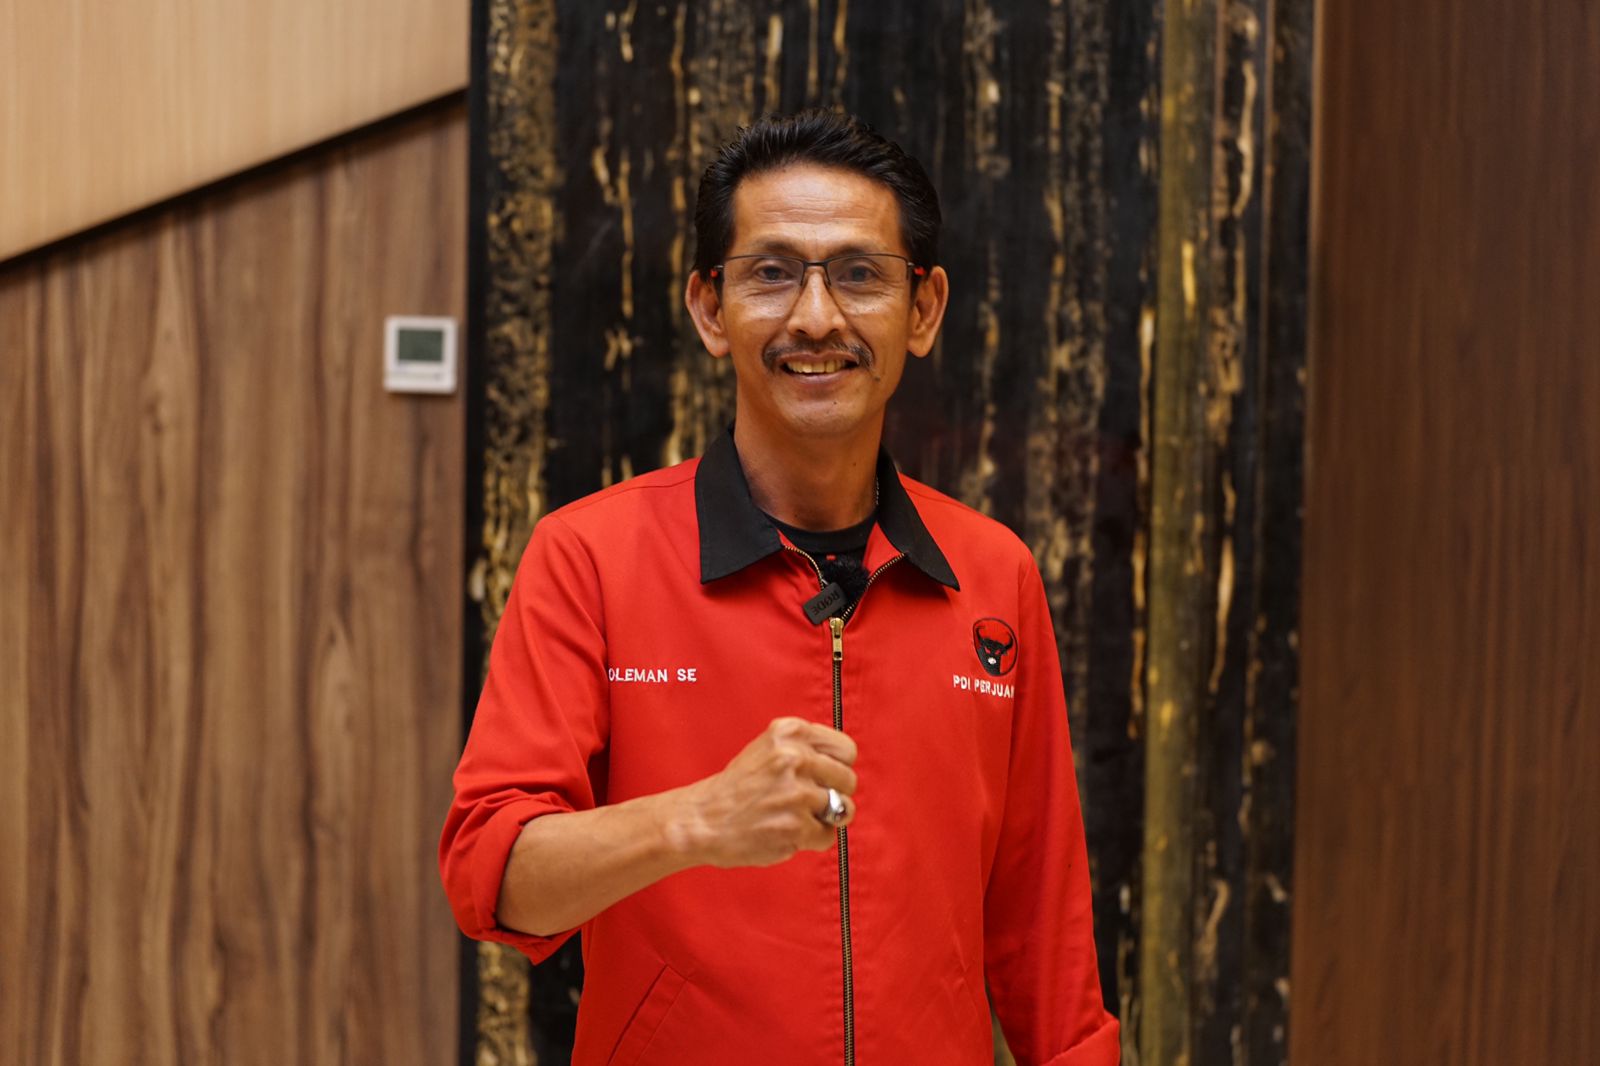 Soleman.SE Ketua DPC PDI-Perjuangan Kabupaten Bekasi Himbau Masyarakat Hadir di TPS 14 Februari 2024 Untuk Menangkan Ganjar Pranowo